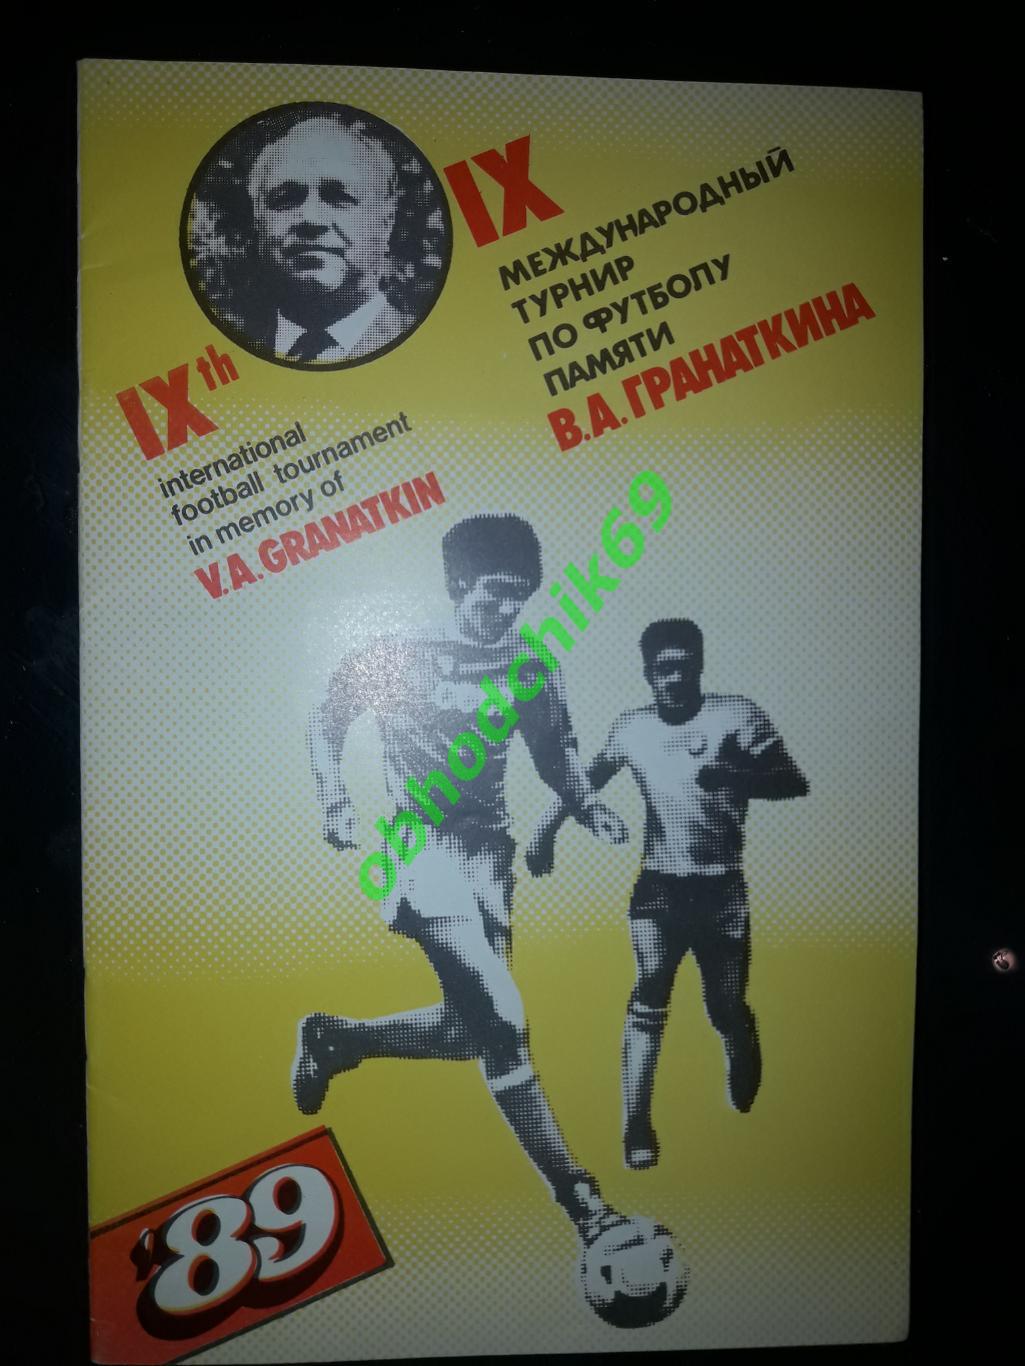 9-й Международный юношеский турнир памяти В.А.Гранаткина . 11-19 01 1989г